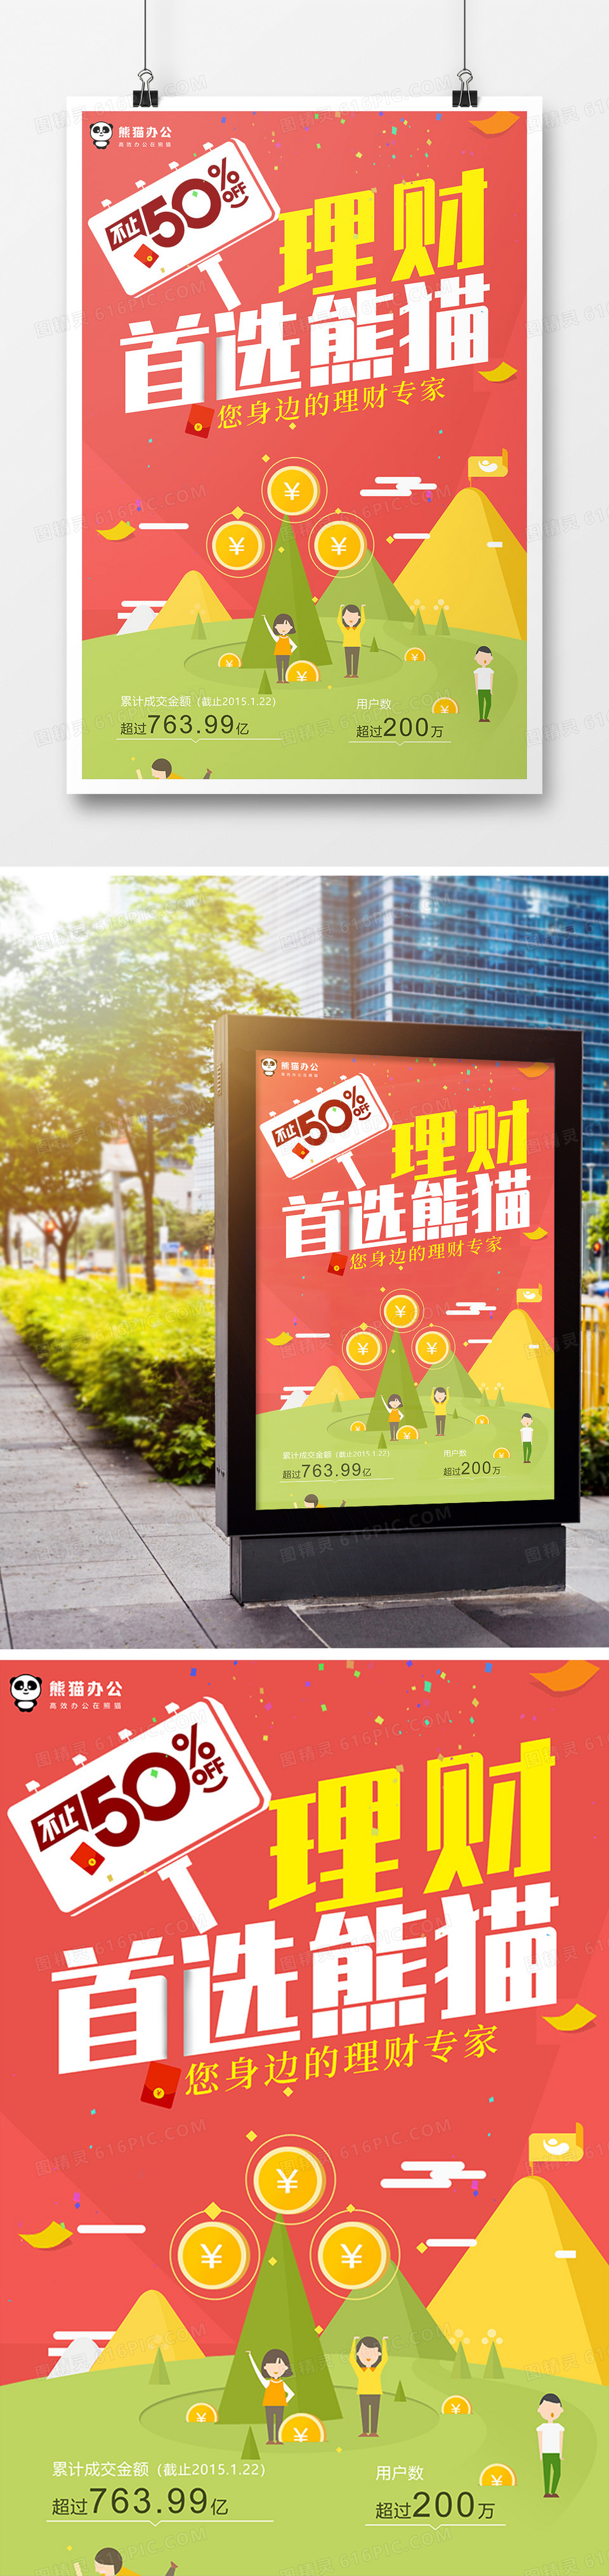 简约大气理财首选熊猫金融宣传海报